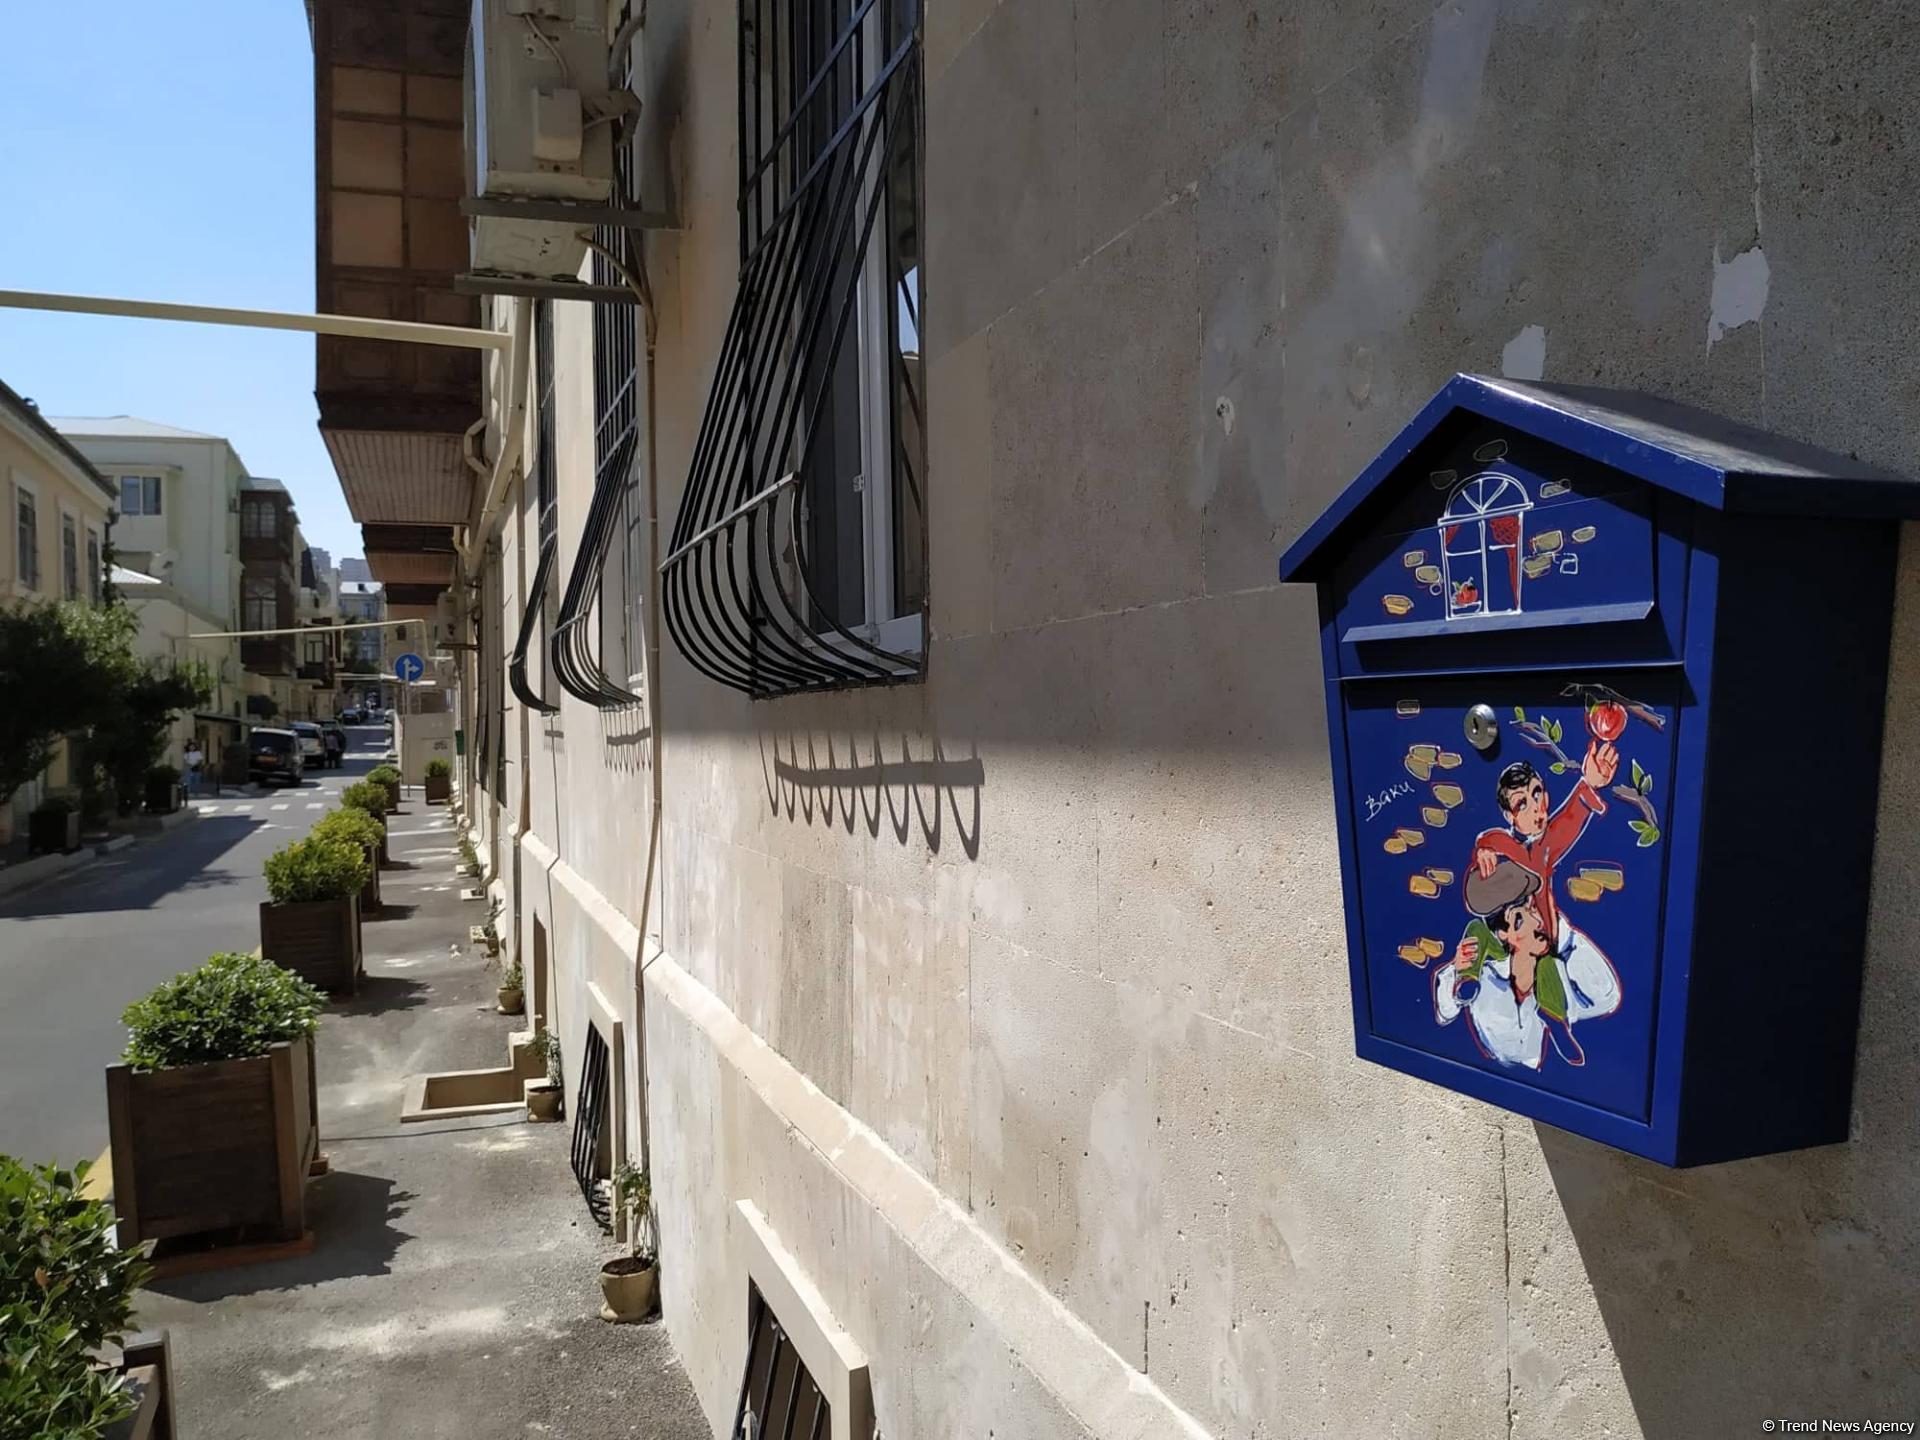 В Баку появились удивительные почтовые ящики! Так и хочется написать письмо…(ФОТО)